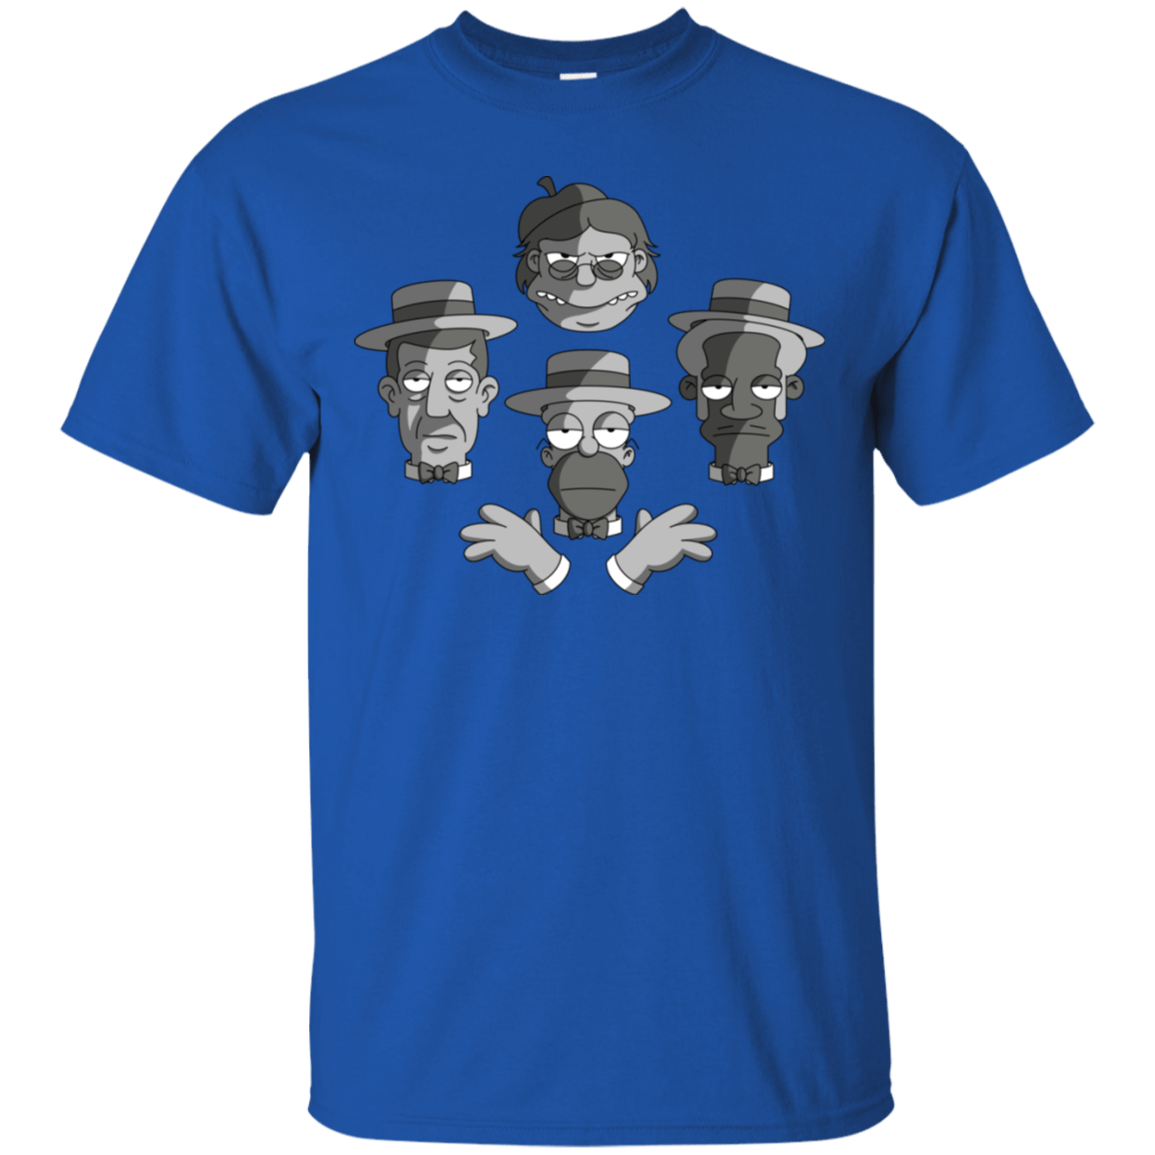 T-Shirts Royal / S The Besharps Rhapsody T-Shirt